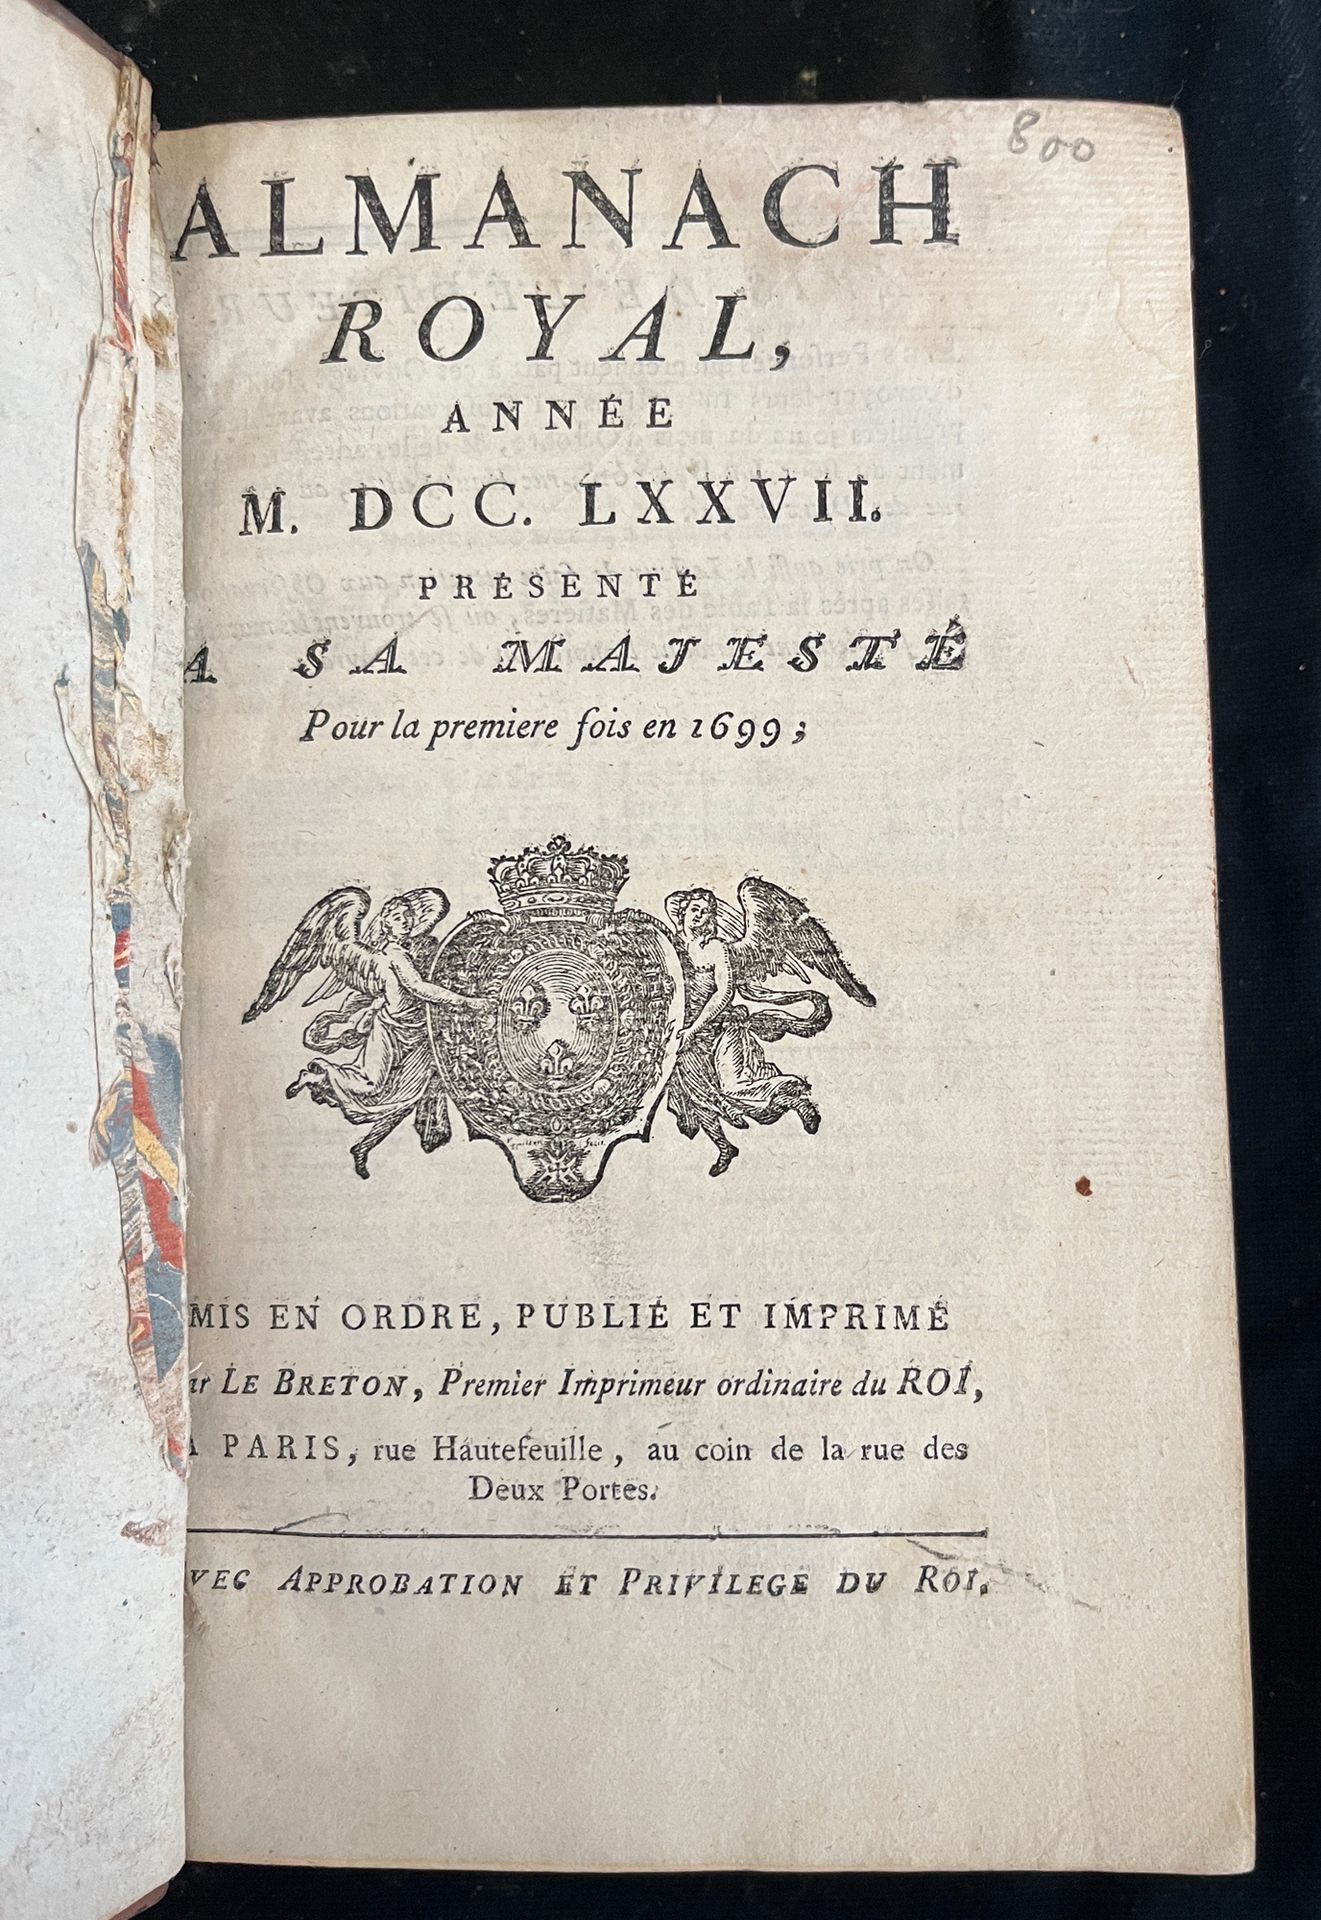 Null [ALMANACH]
Almanach royal pour l'an MDCCLXXVII. Paris, chez Le Breton rue H&hellip;